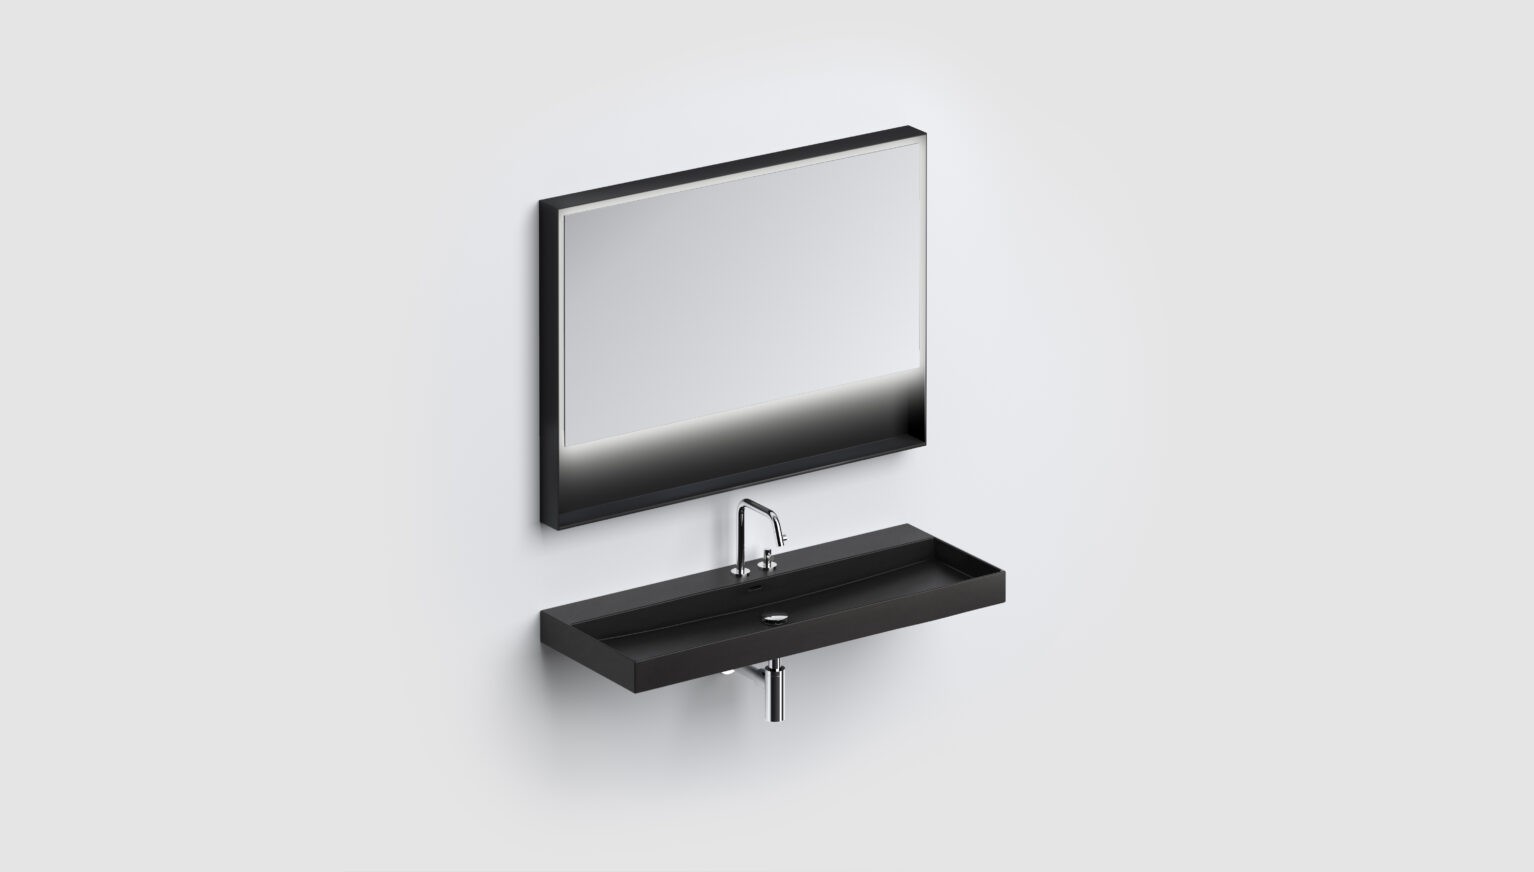 Spiegel-LED-verlichting-met-ophangsysteem-planchet-rechthoekig-110cm-80cm-zwart-toilet-badkamer-luxe-sanitair-Flat-clou-CL080811021-new-wash-me-wastafel-kaldur-kraan-